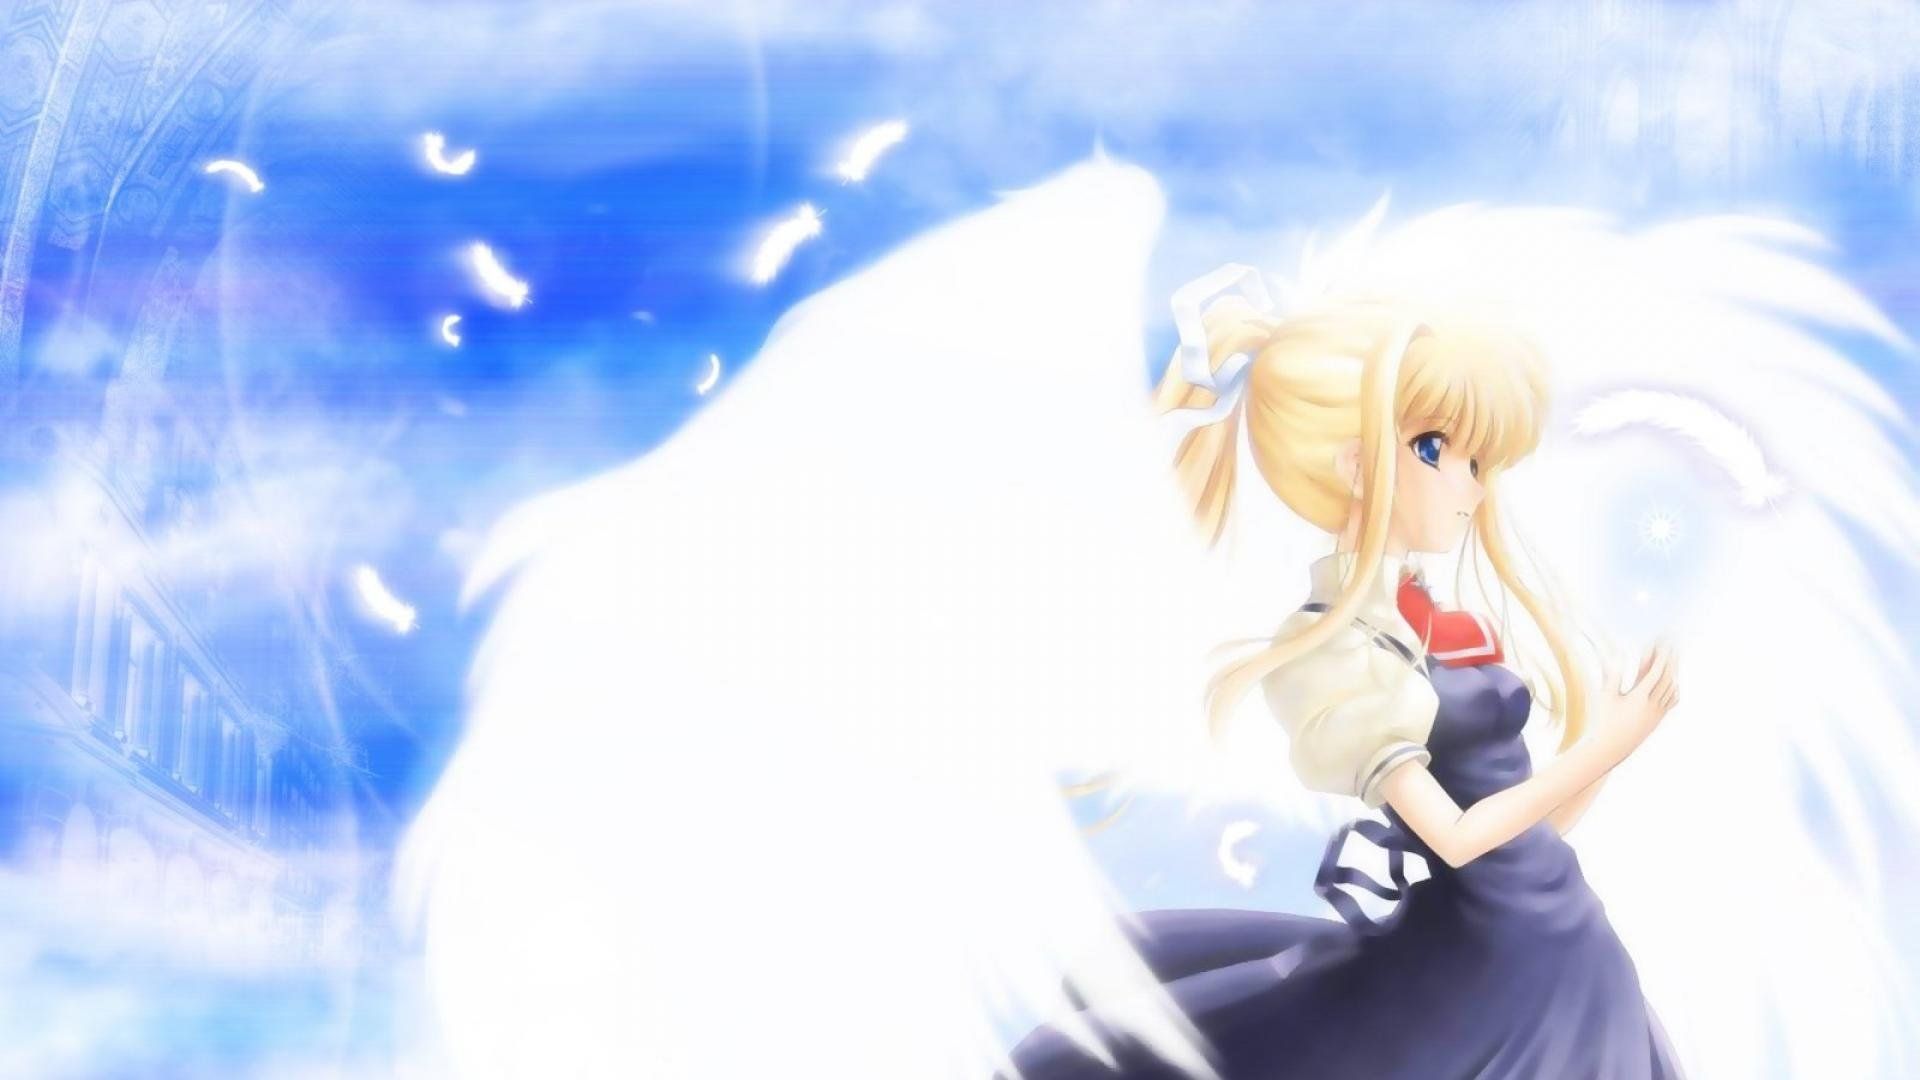 Anime angel girl wallpaper